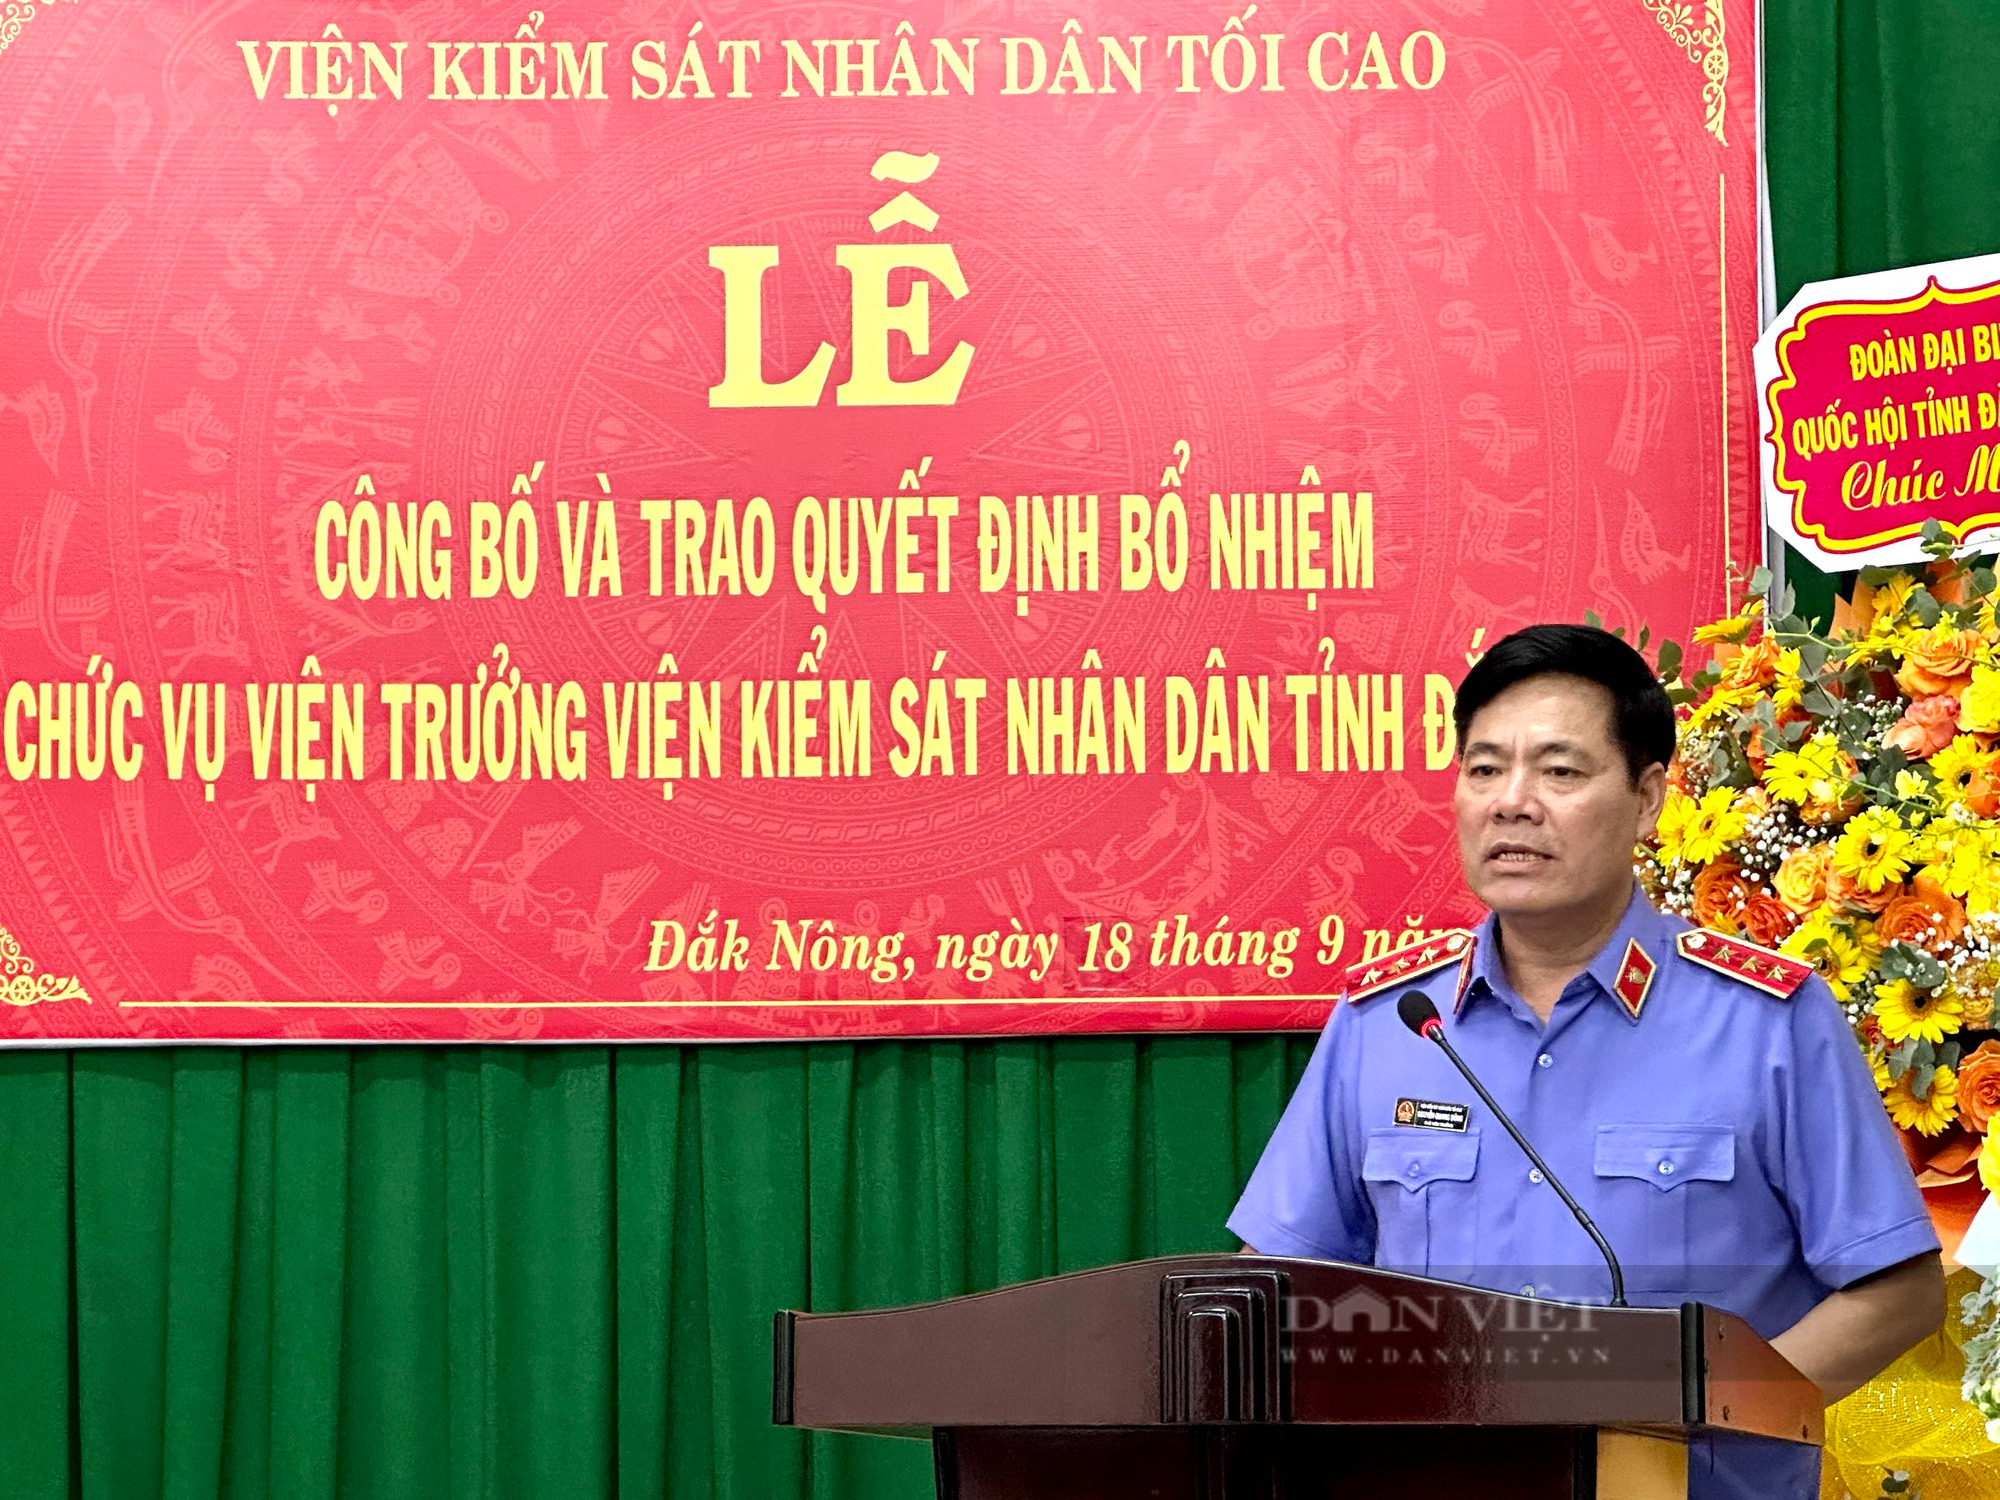 Bổ nhiệm ông Tạ Đình Đề giữ chức Viện trưởng Viện Kiểm sát nhân dân tỉnh Đắk Nông - Ảnh 2.